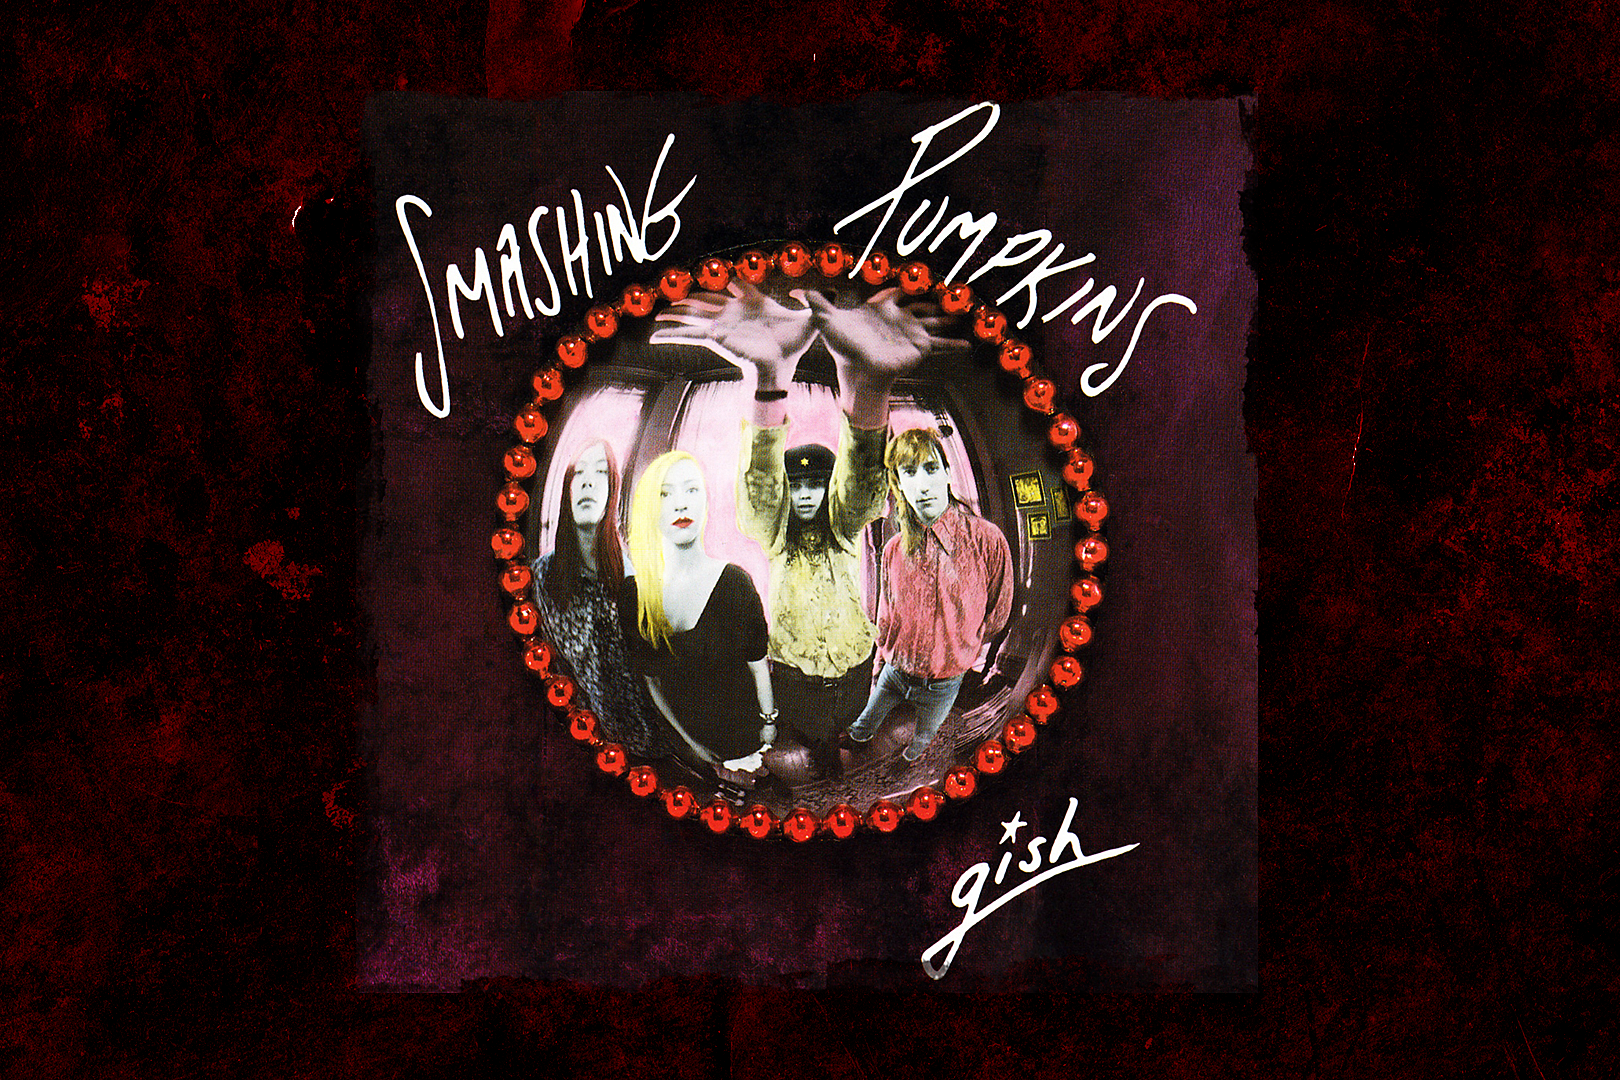 31 Years Ago: Smashing Pumpkins Release Debut Album 'Gish'